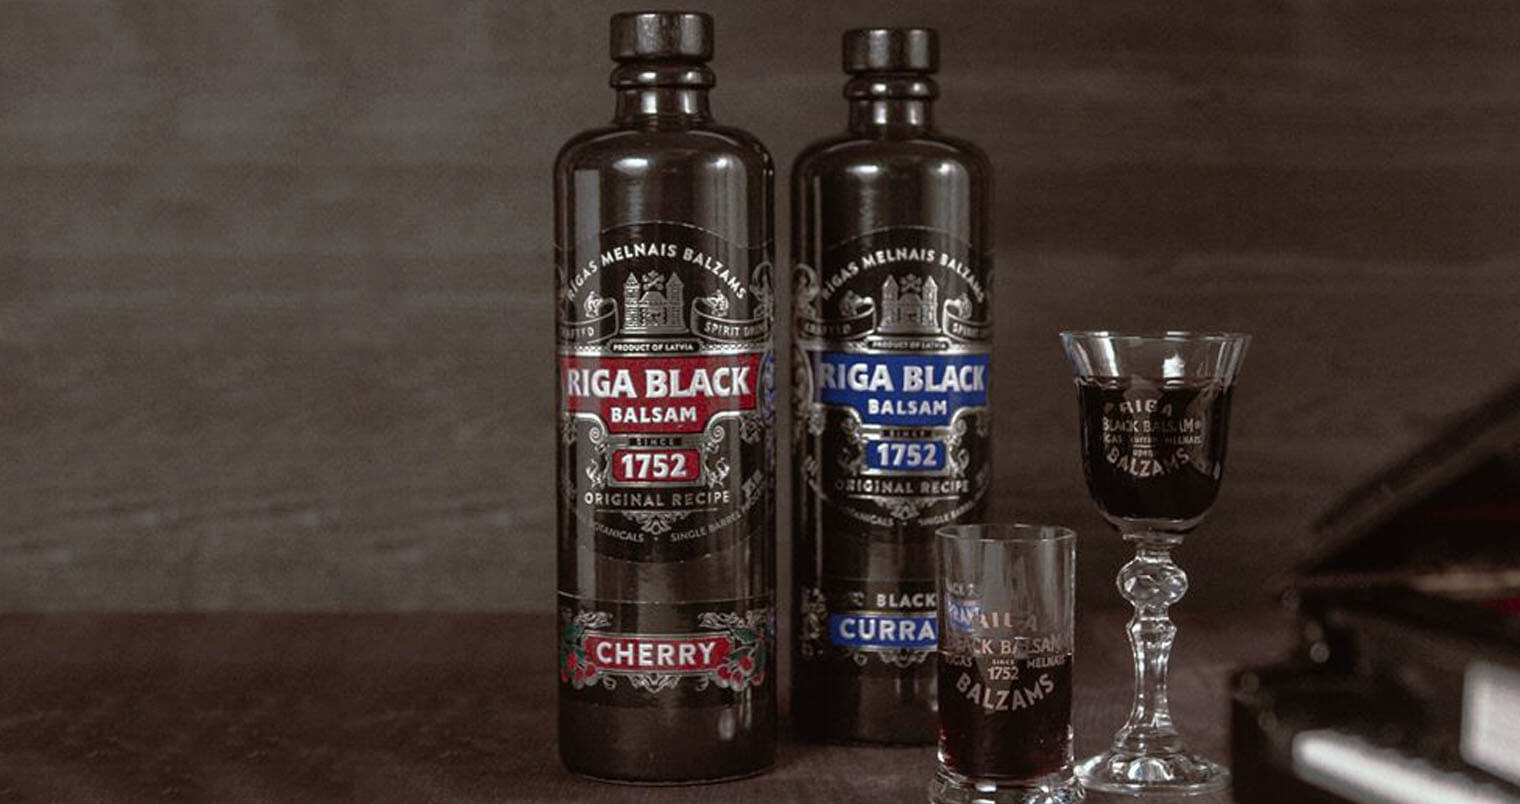 Riga Black Balsam, featured image